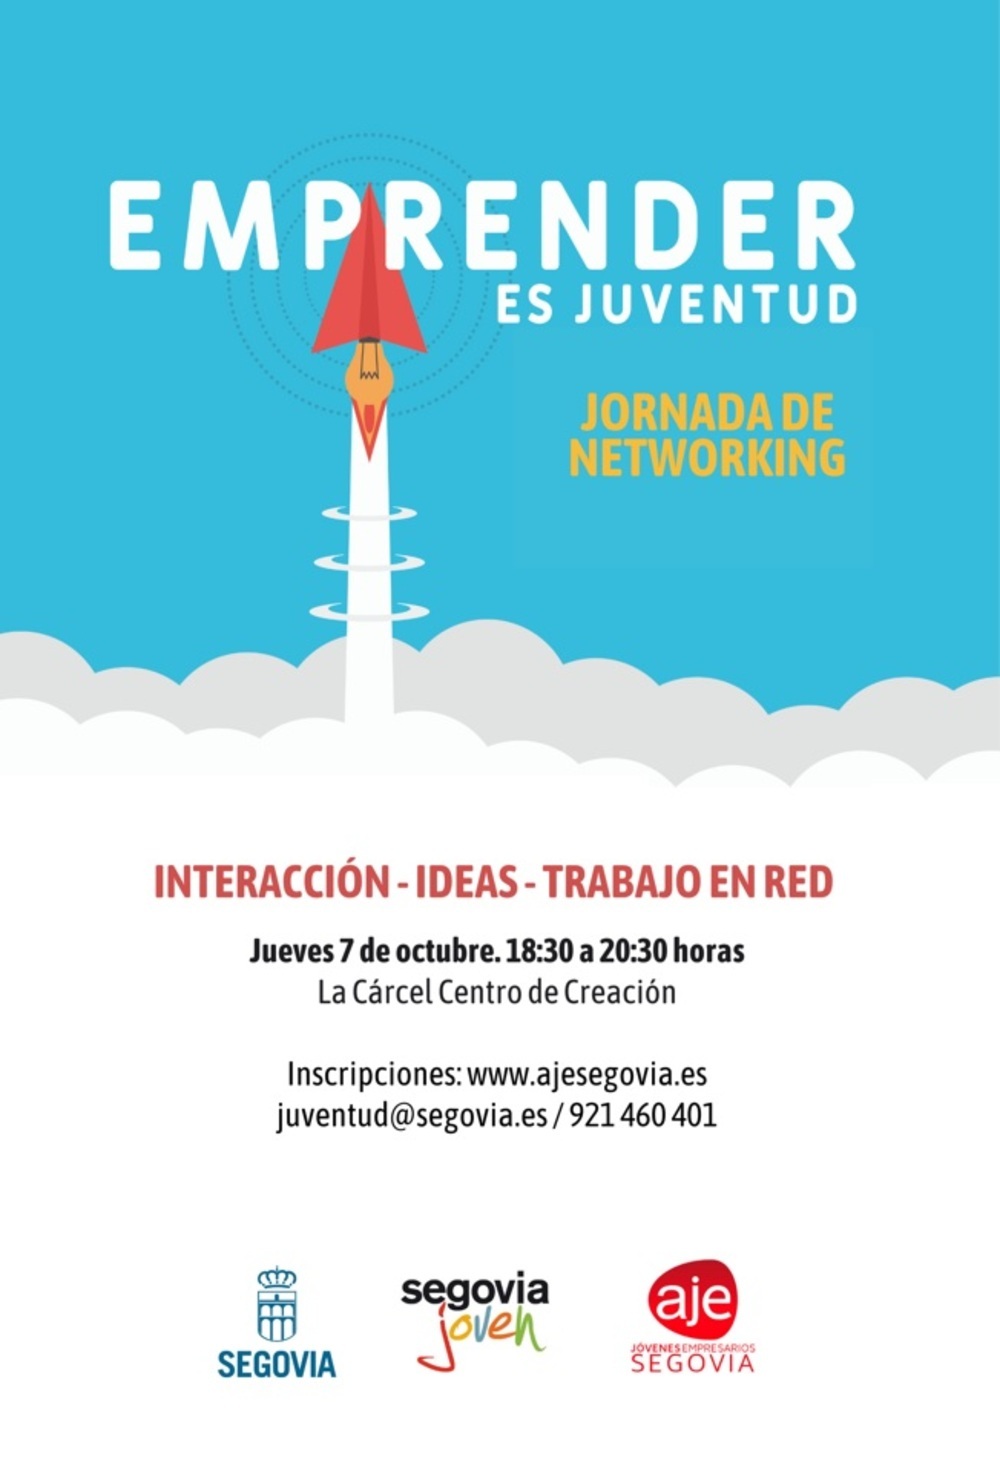 Juventud y AJE Segovia organizan una jornada de networking